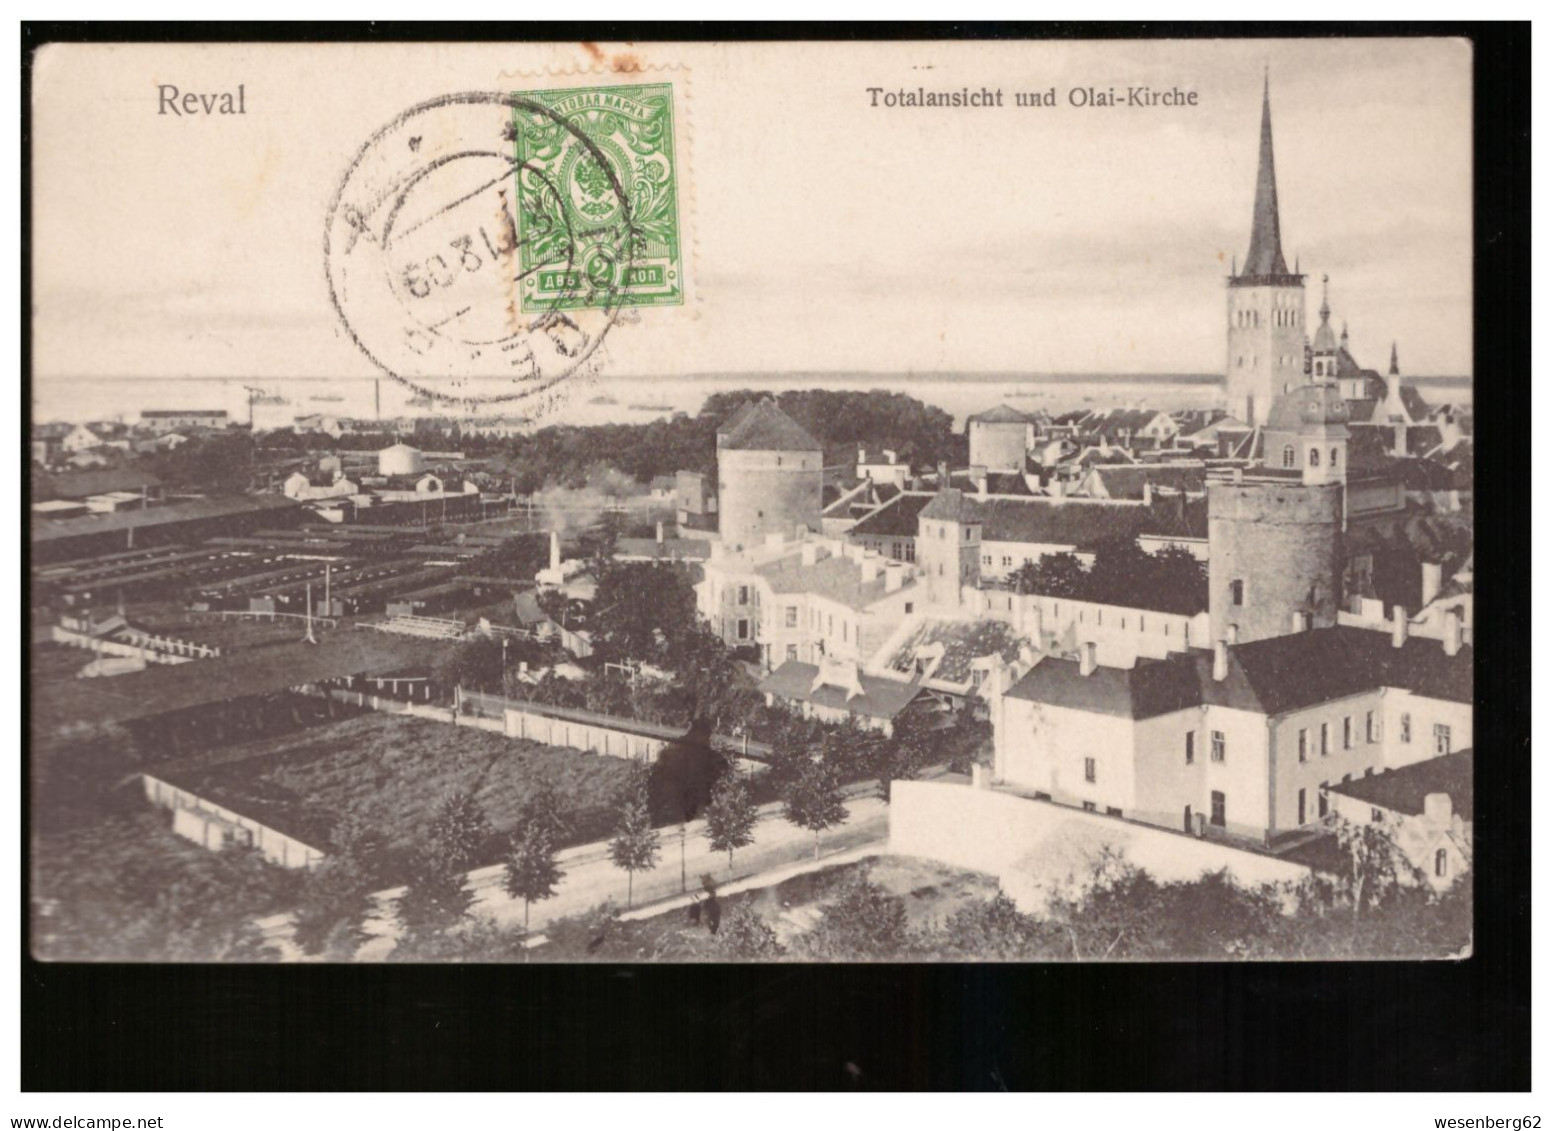 Reval/ Tallinn Totalansicht Und Olai- Kirche 1909 - Estland